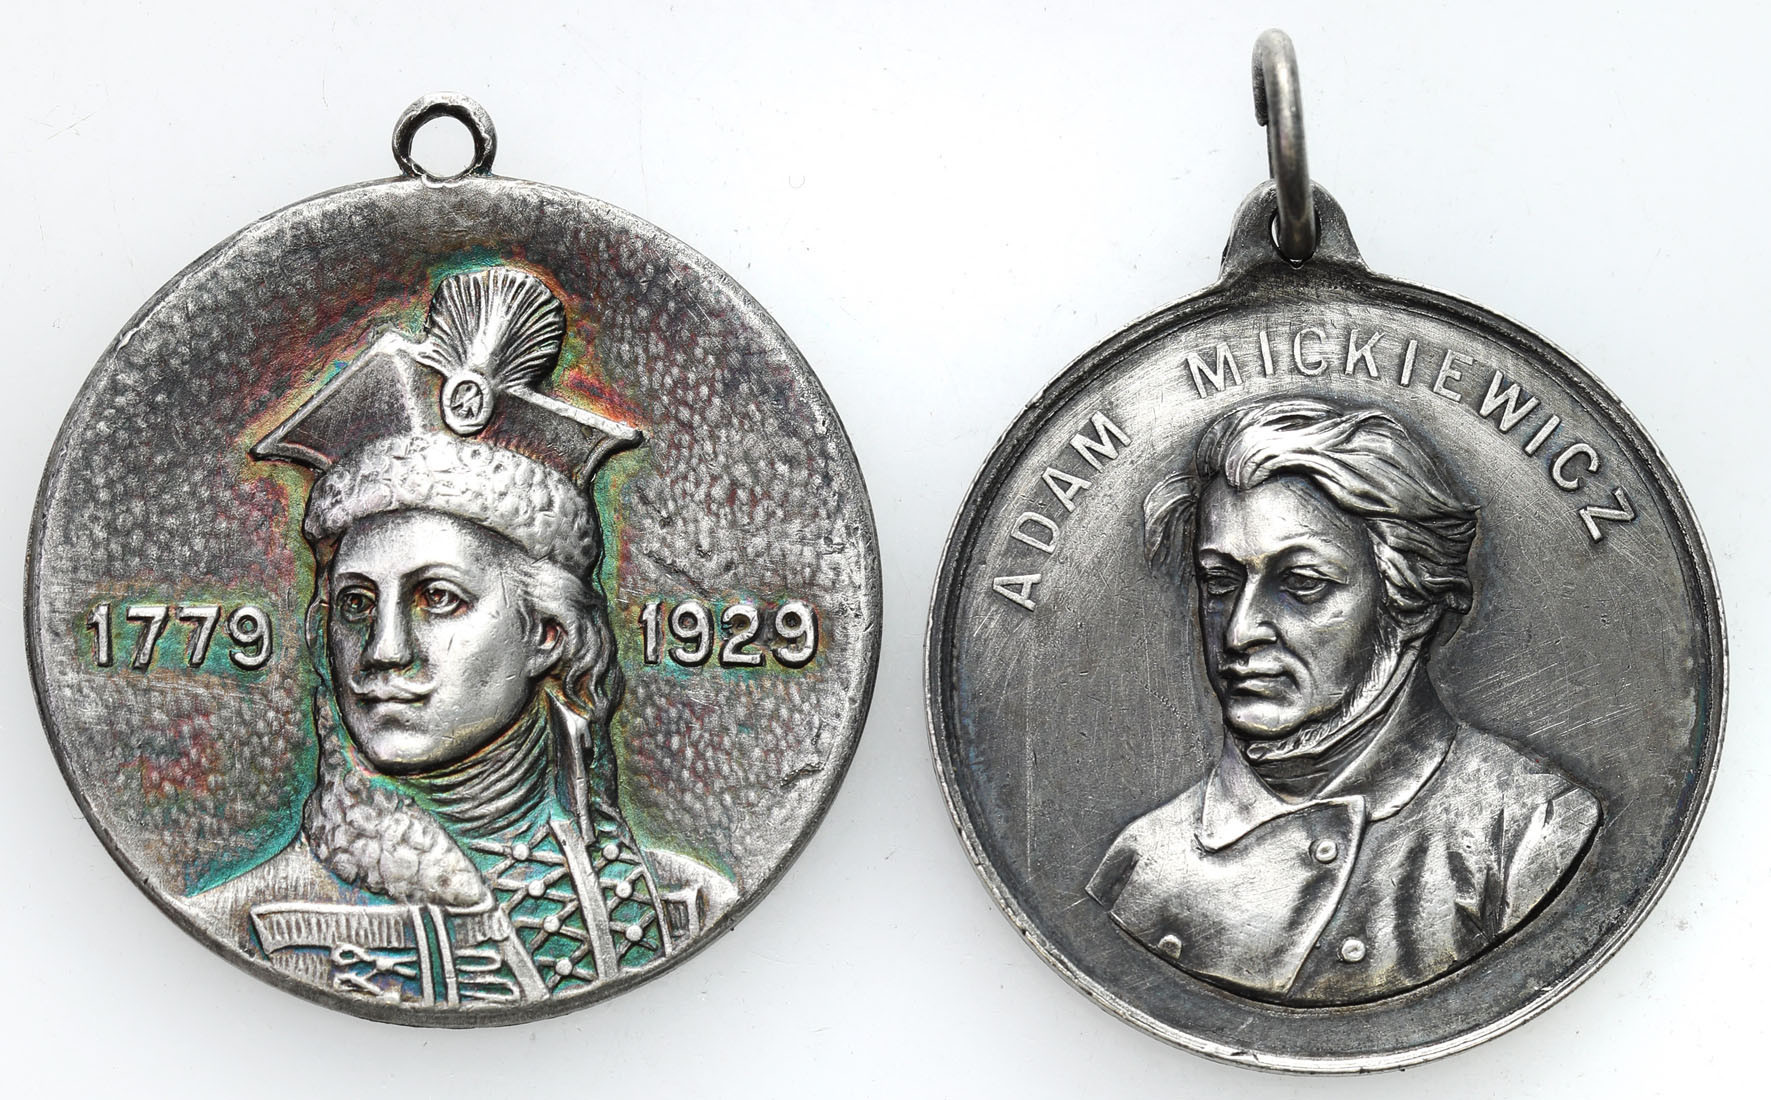 Polska pod zaborami i II RP. Medal – Mickiewicz, Pułaski, zestaw 2 sztuk